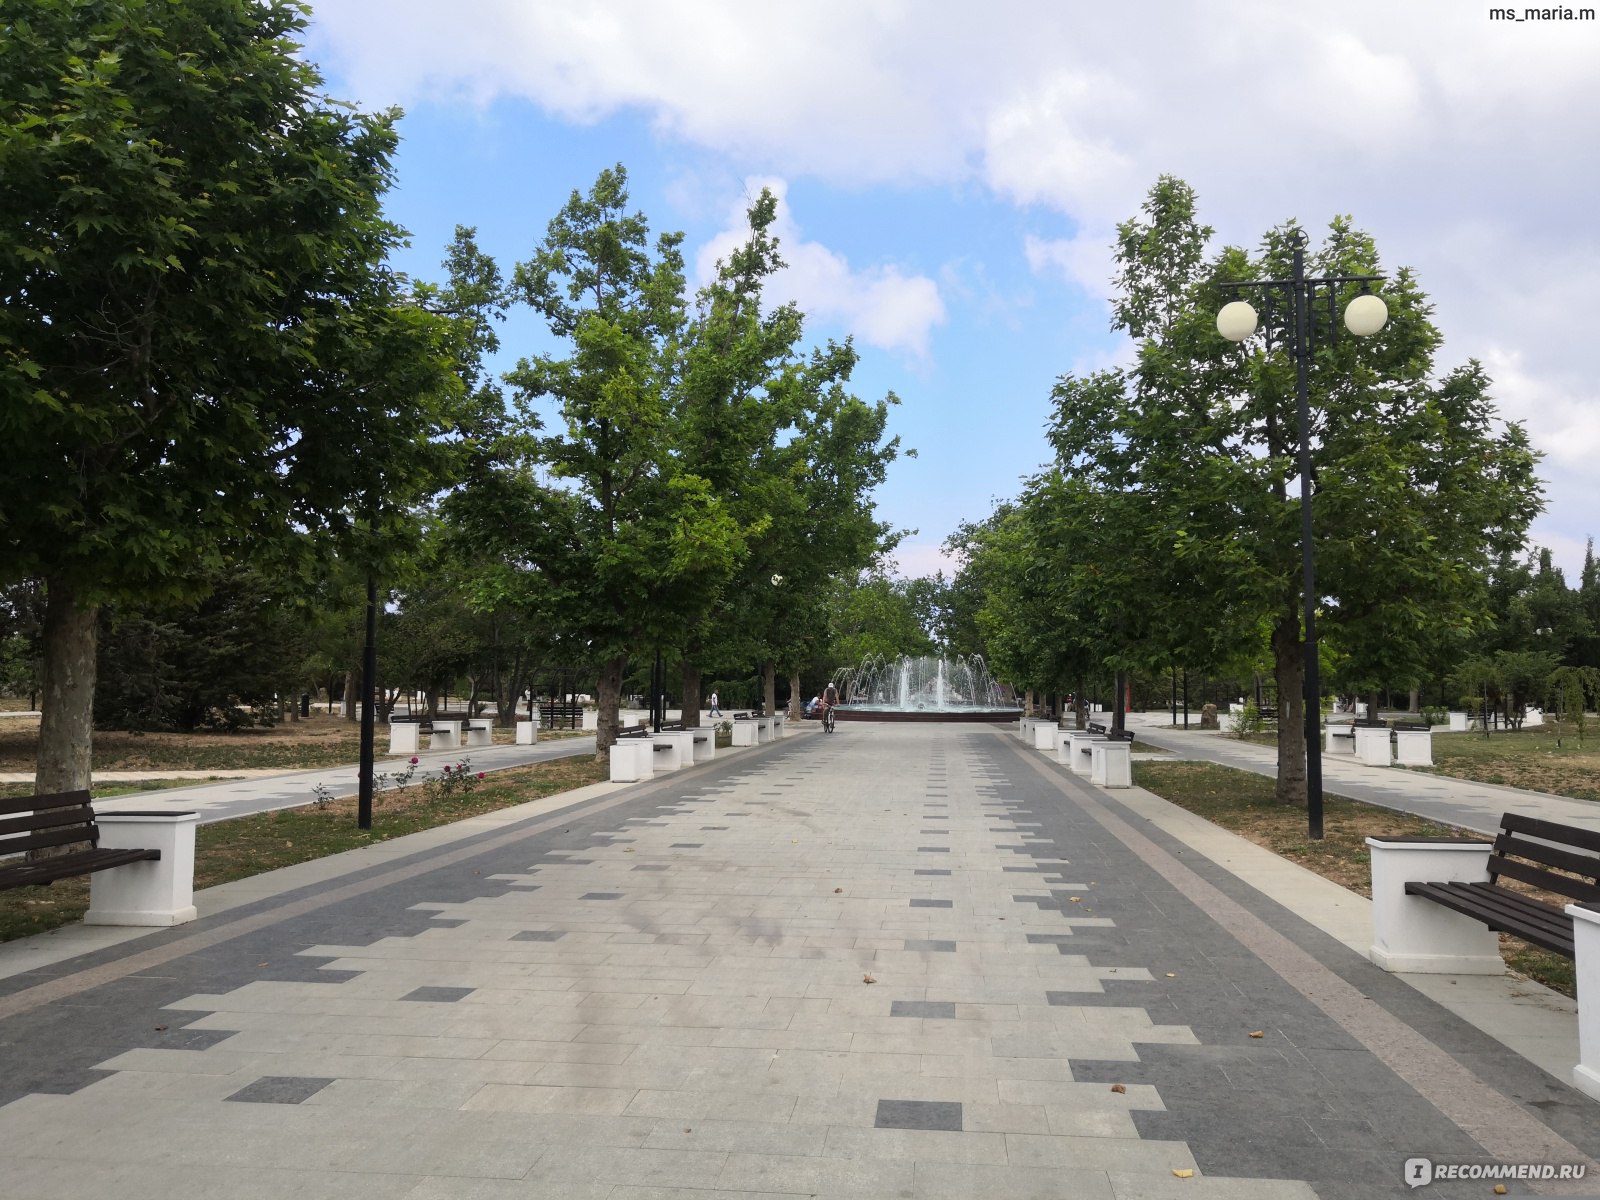 Центральная аллея Парка Победы в Севастополе. Парк после реконструкции в 2019 году.